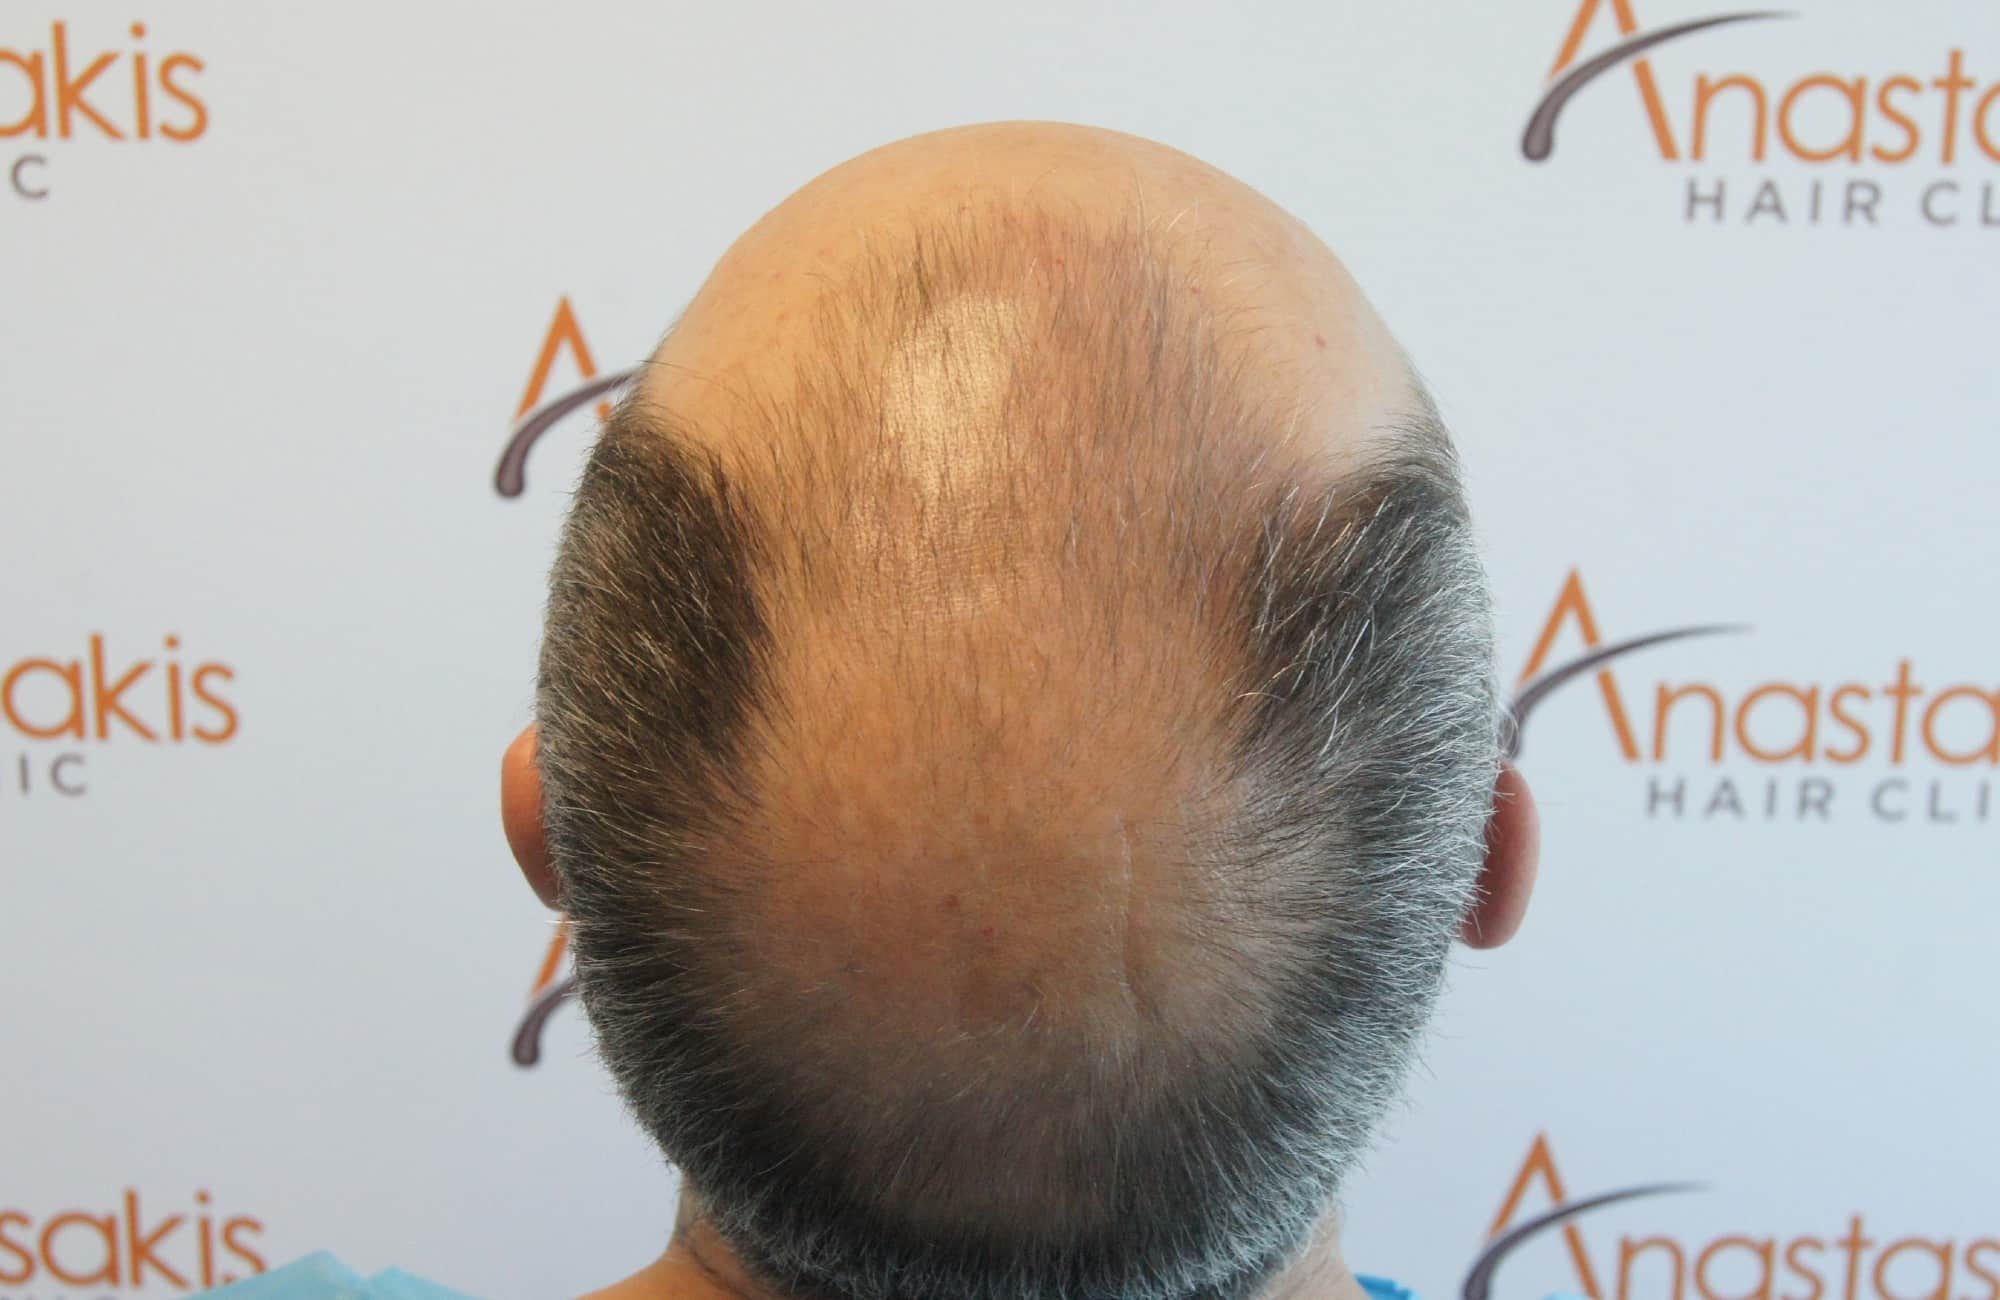 περιστατικο πριν τη μεταμόσχευση μαλλιων στην anastasakis hair clinic 8